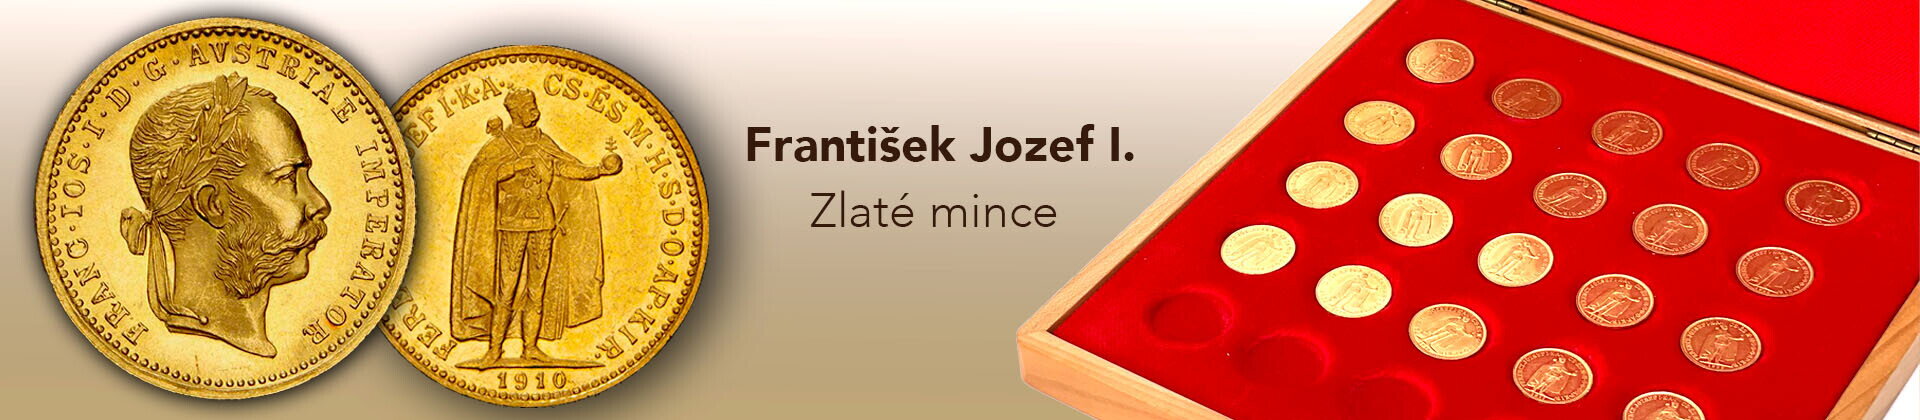 František Jozef I. - zlaté mince